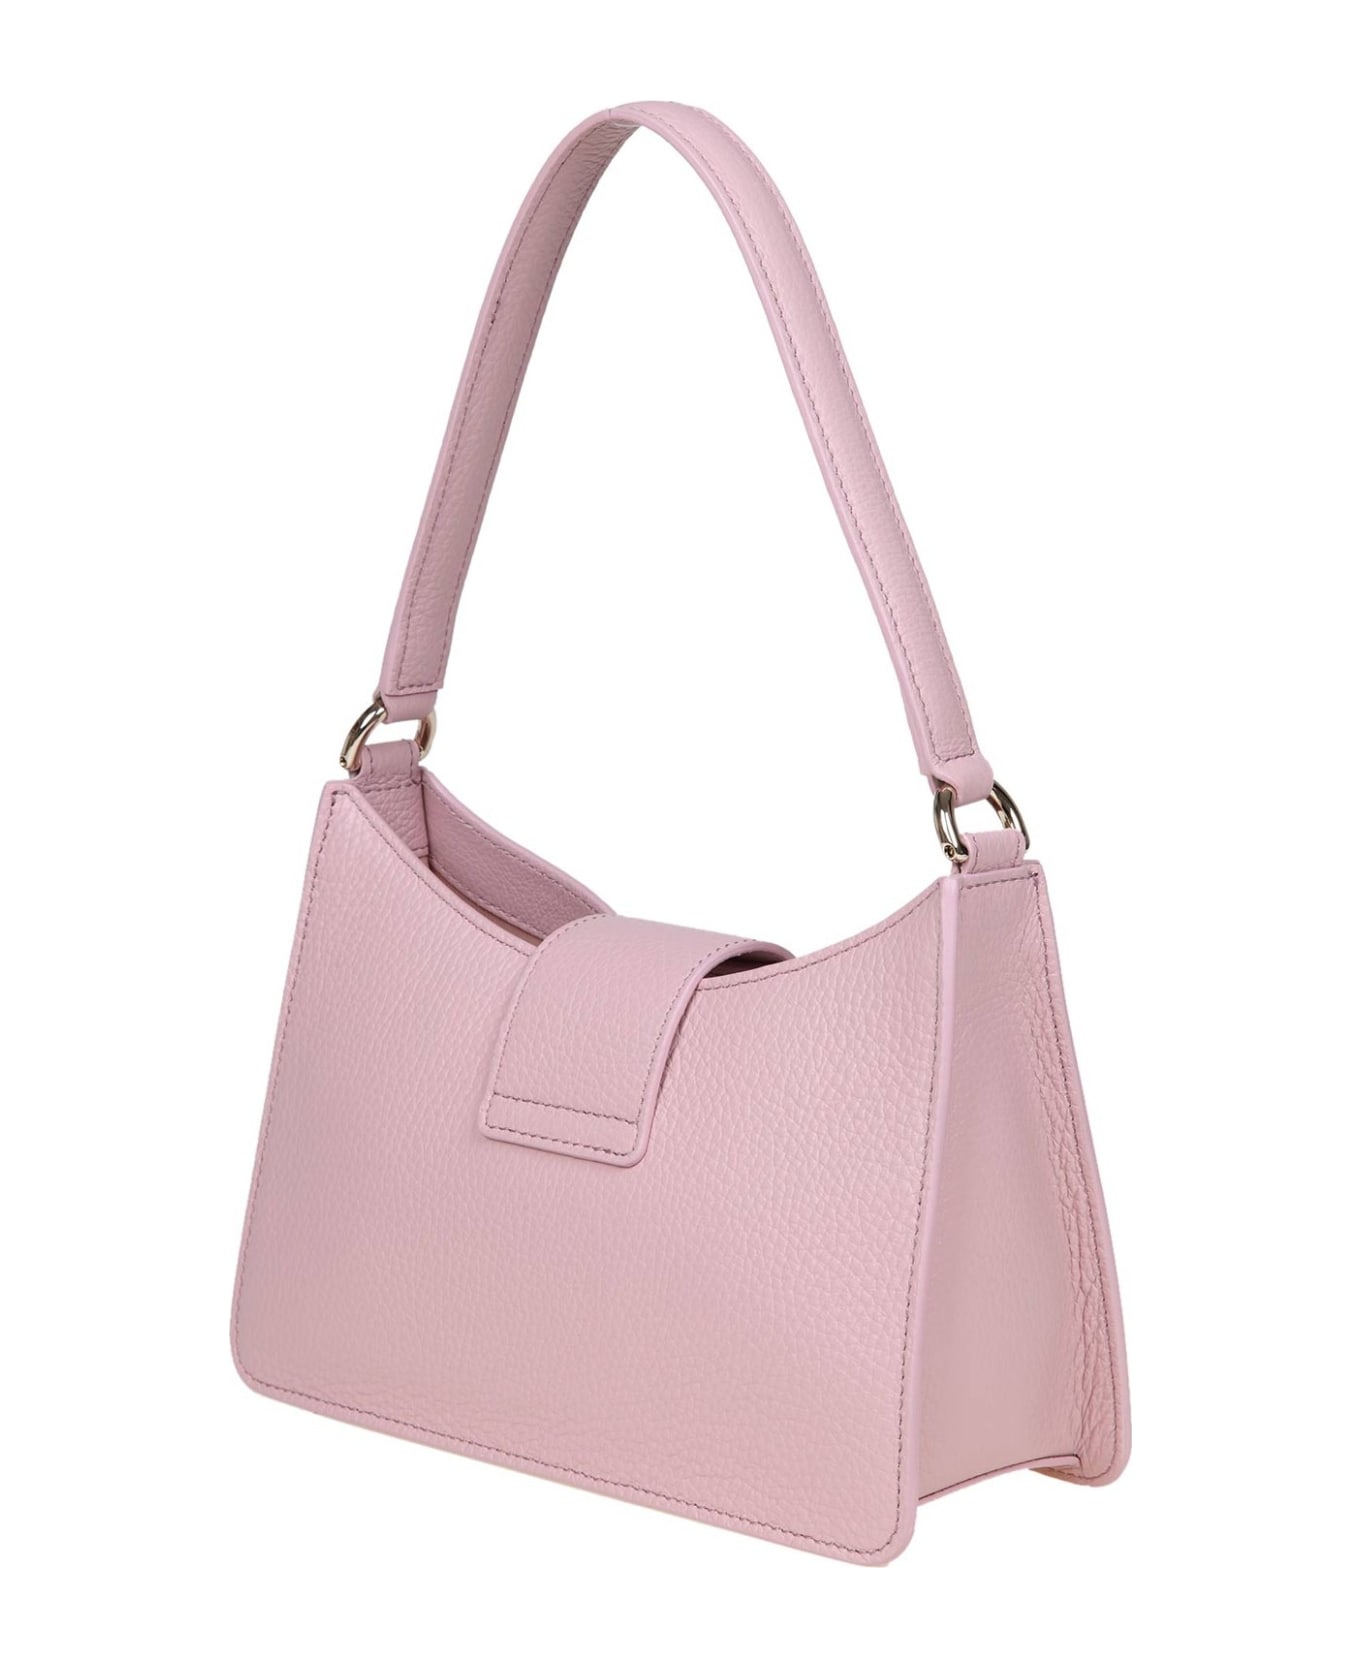 Furla 1927 S Shoulder Bag In Pink Soft Leather - Alba トートバッグ